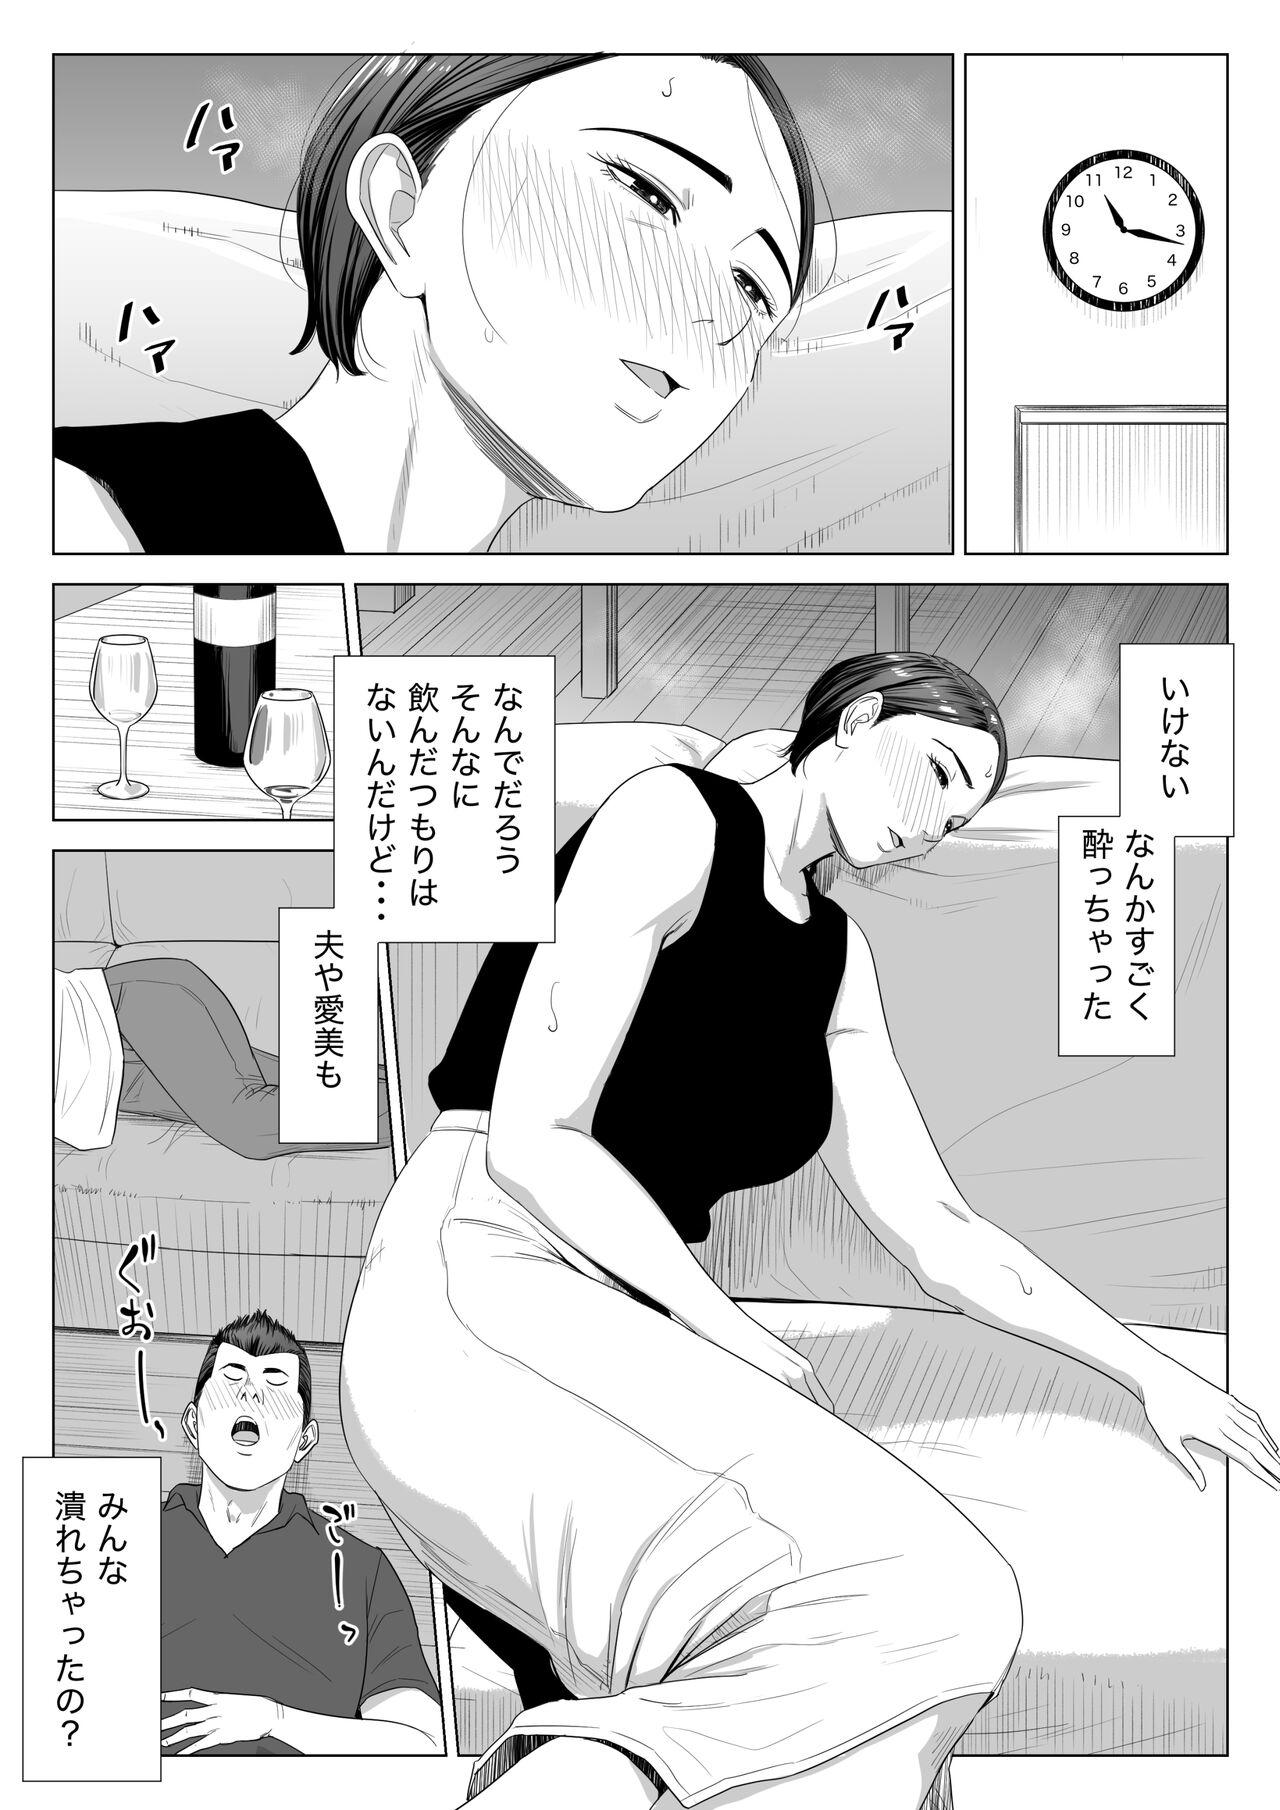 Oral Porn Gibo no tsukaeru karada. - Original Anal Porn - Page 9